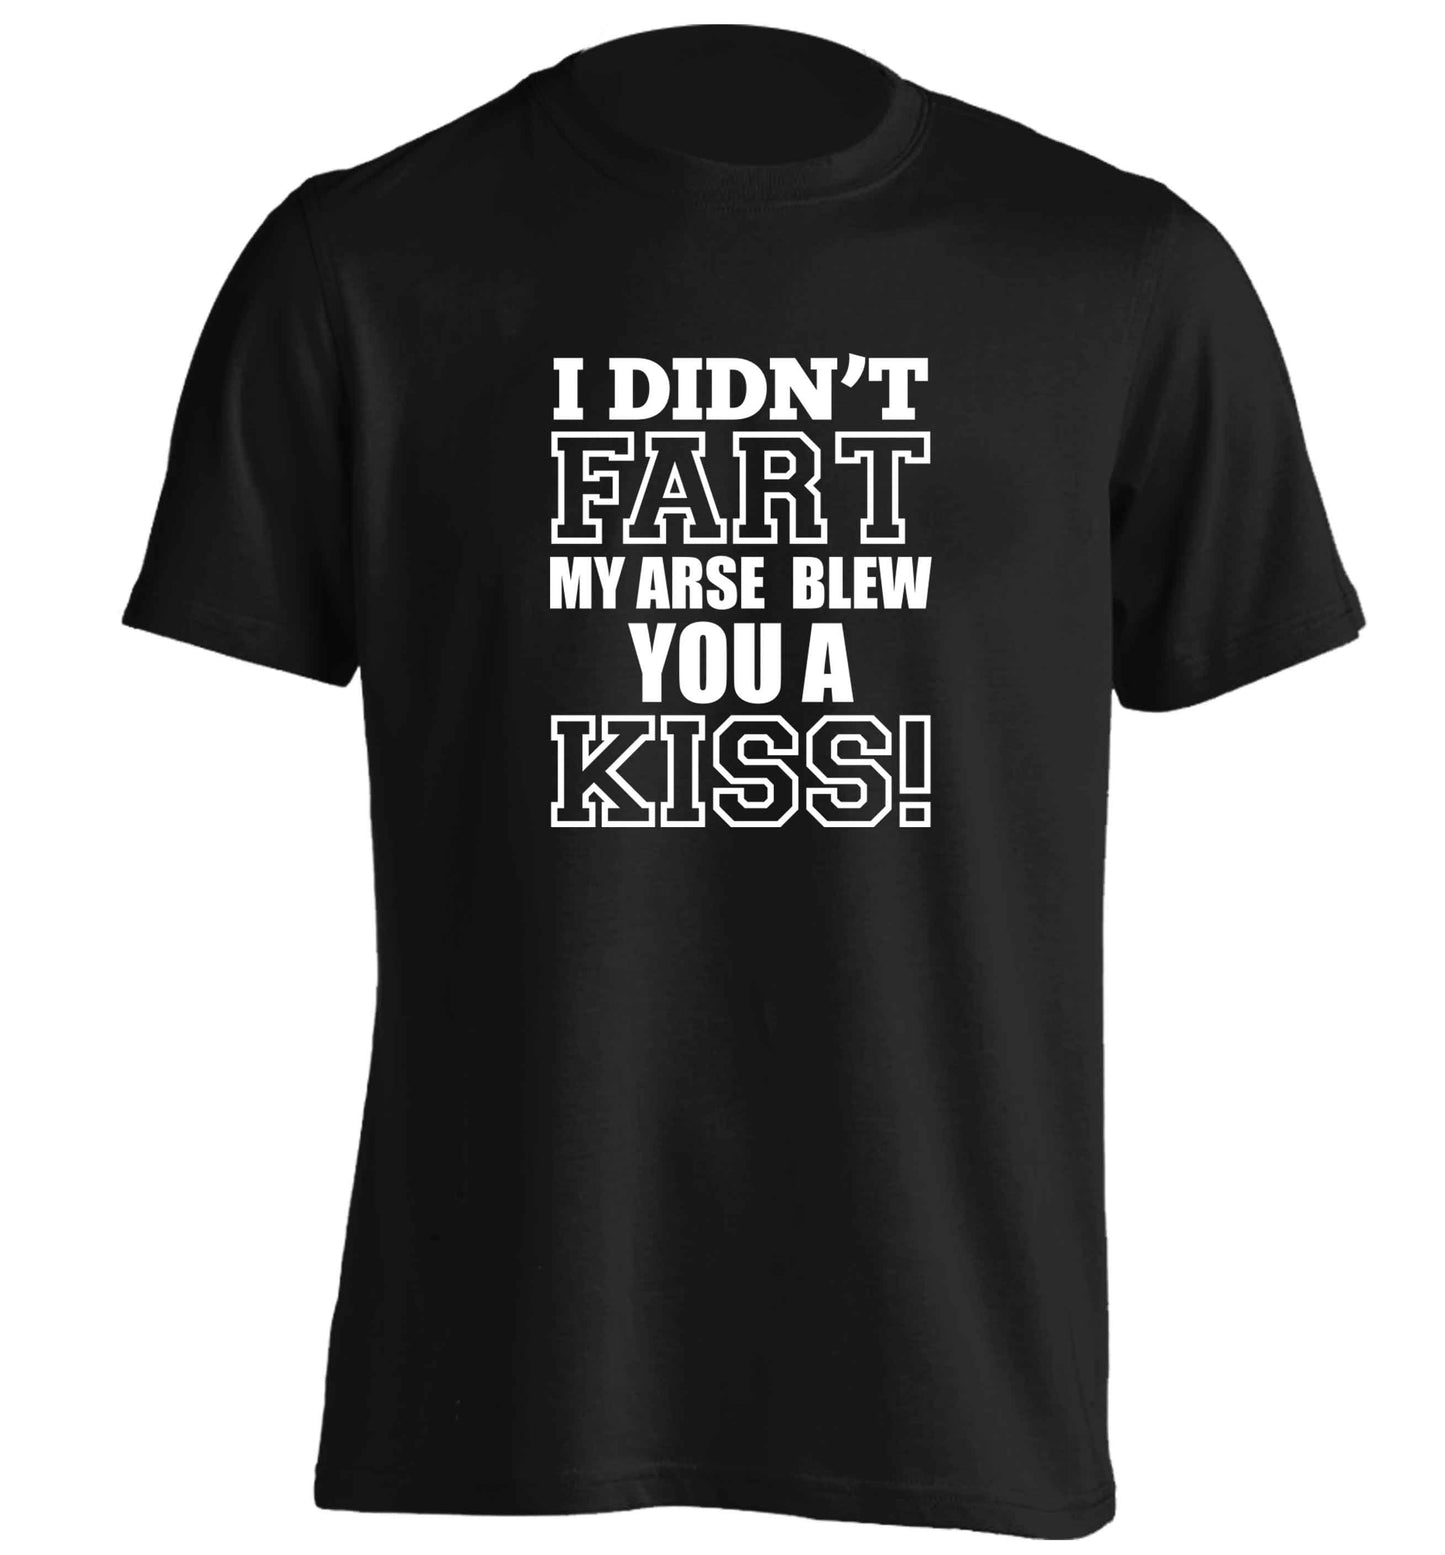 I didn't fart my arse blew you a kiss adults unisex black Tshirt 2XL